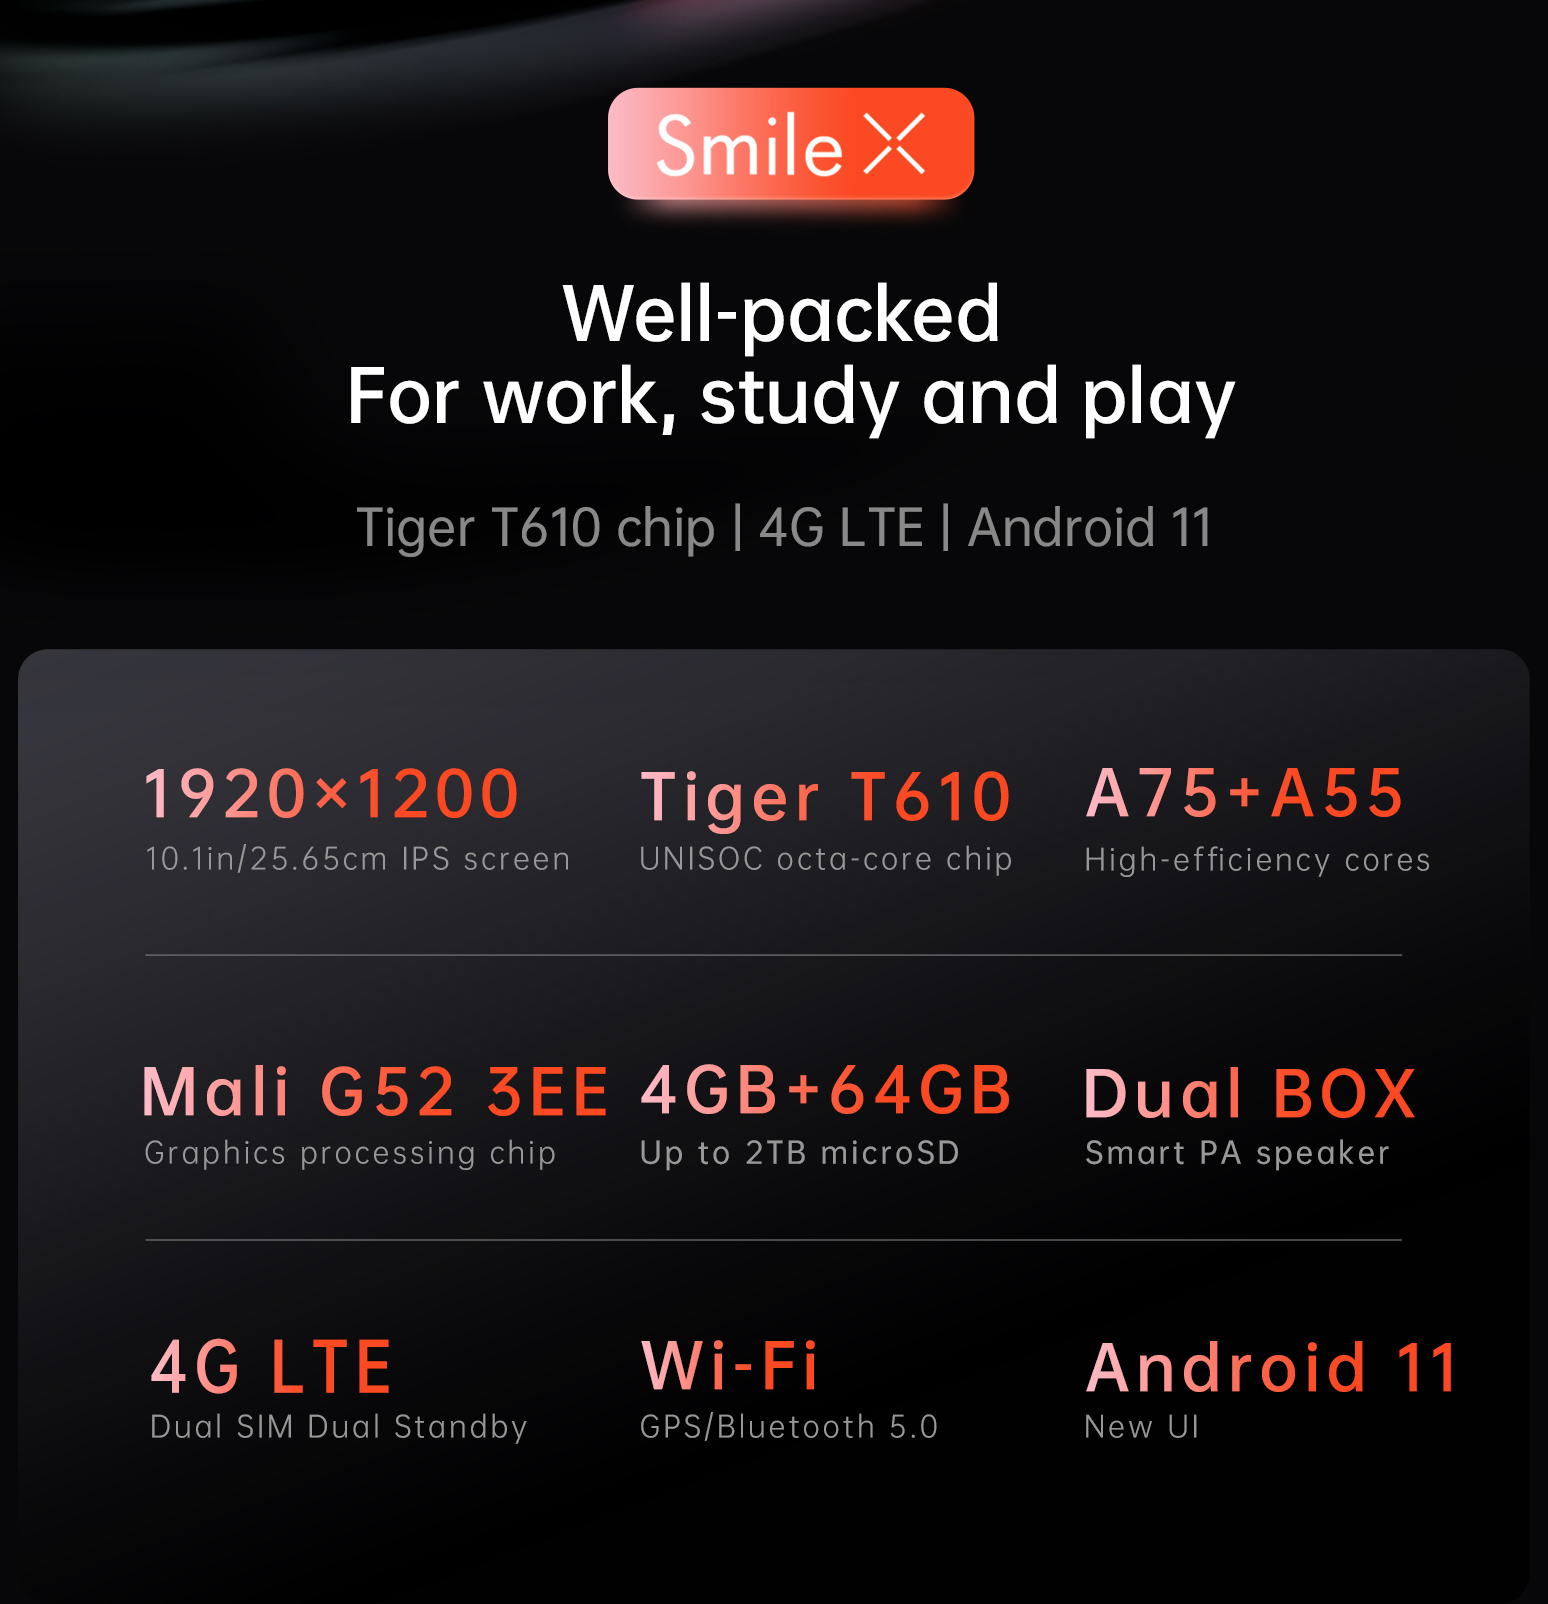 ข้อมูลเกี่ยวกับ 【NEWEST】Alldocube Smile X Tablet 10.1 inch FHD Screen T610 Octa-Core 4GB RAM 64GB ROM Android 11 Dual Band WiFi Dual 4G Phone Call Tablet PC